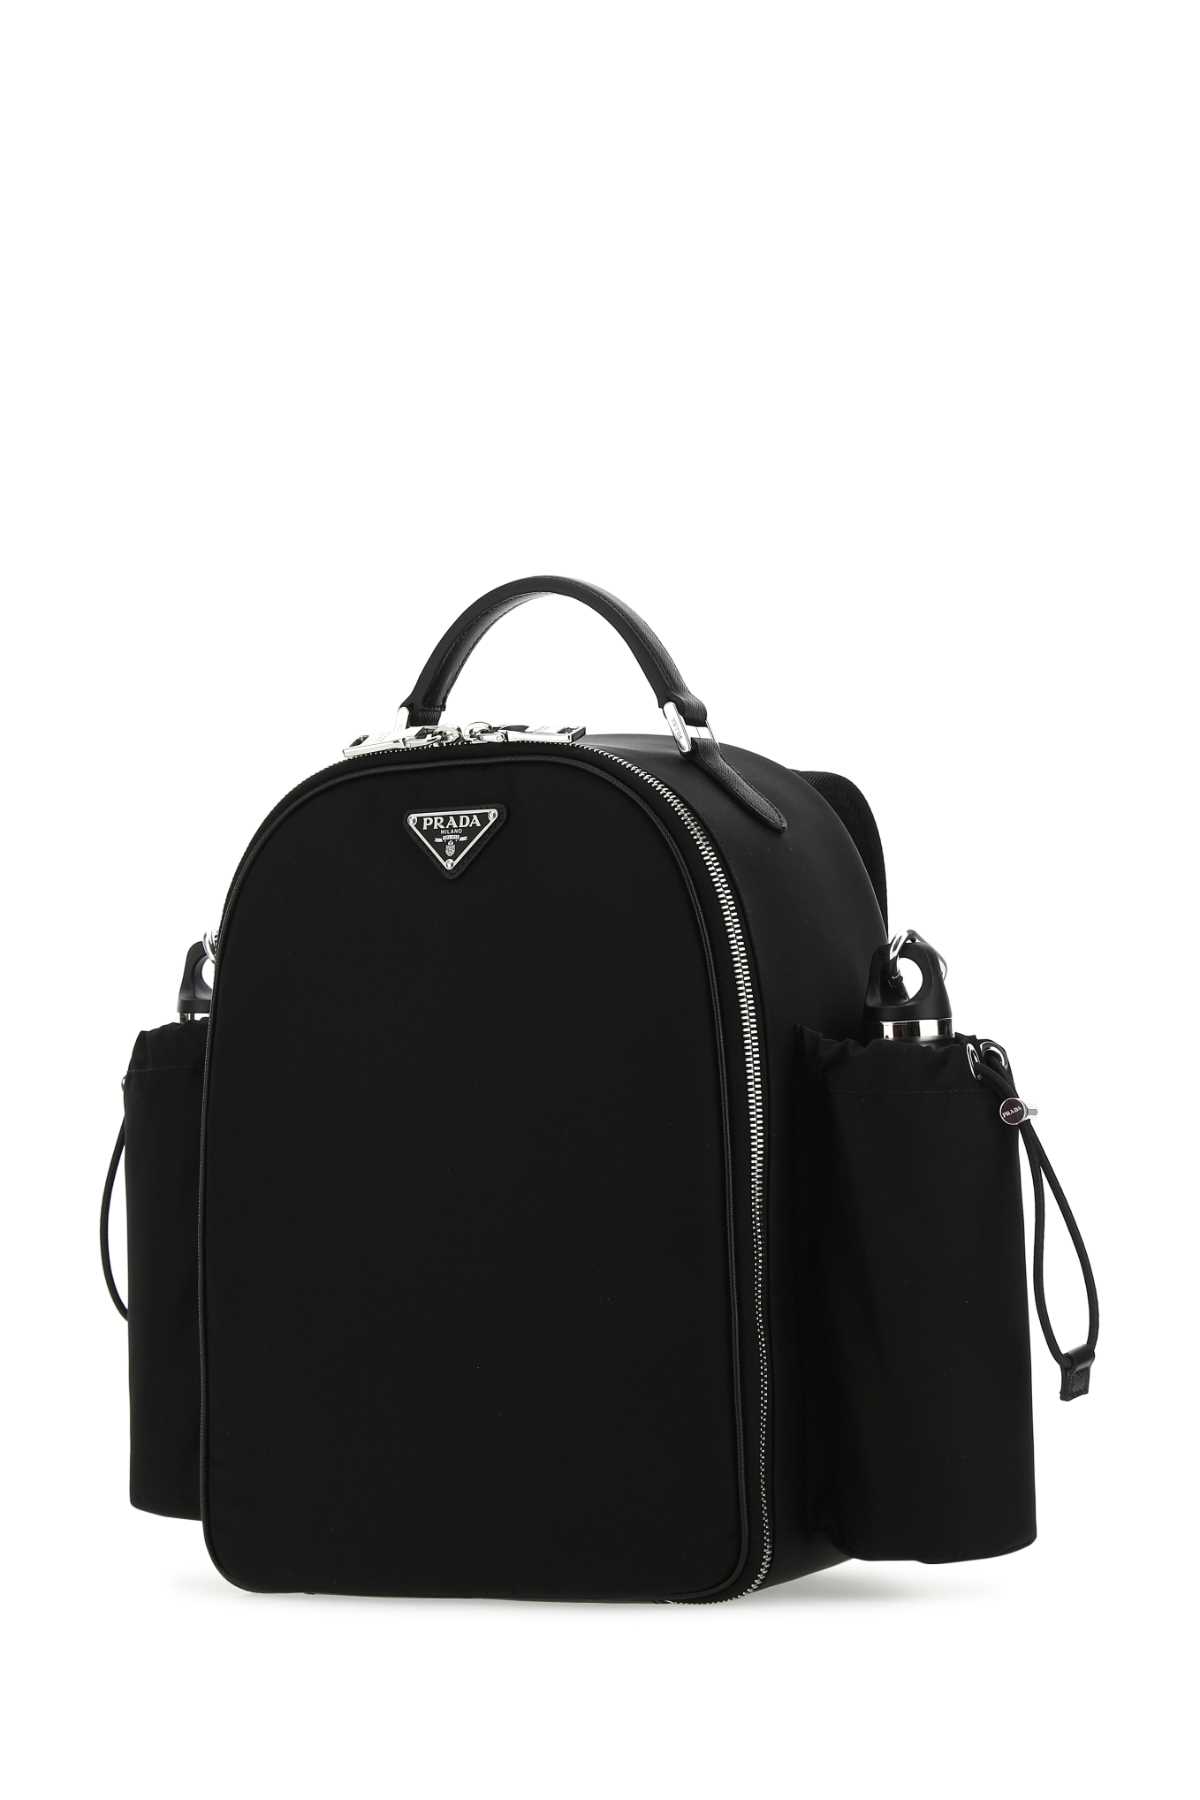 Prada Black Re-nylon Picnic Backpack In F0002